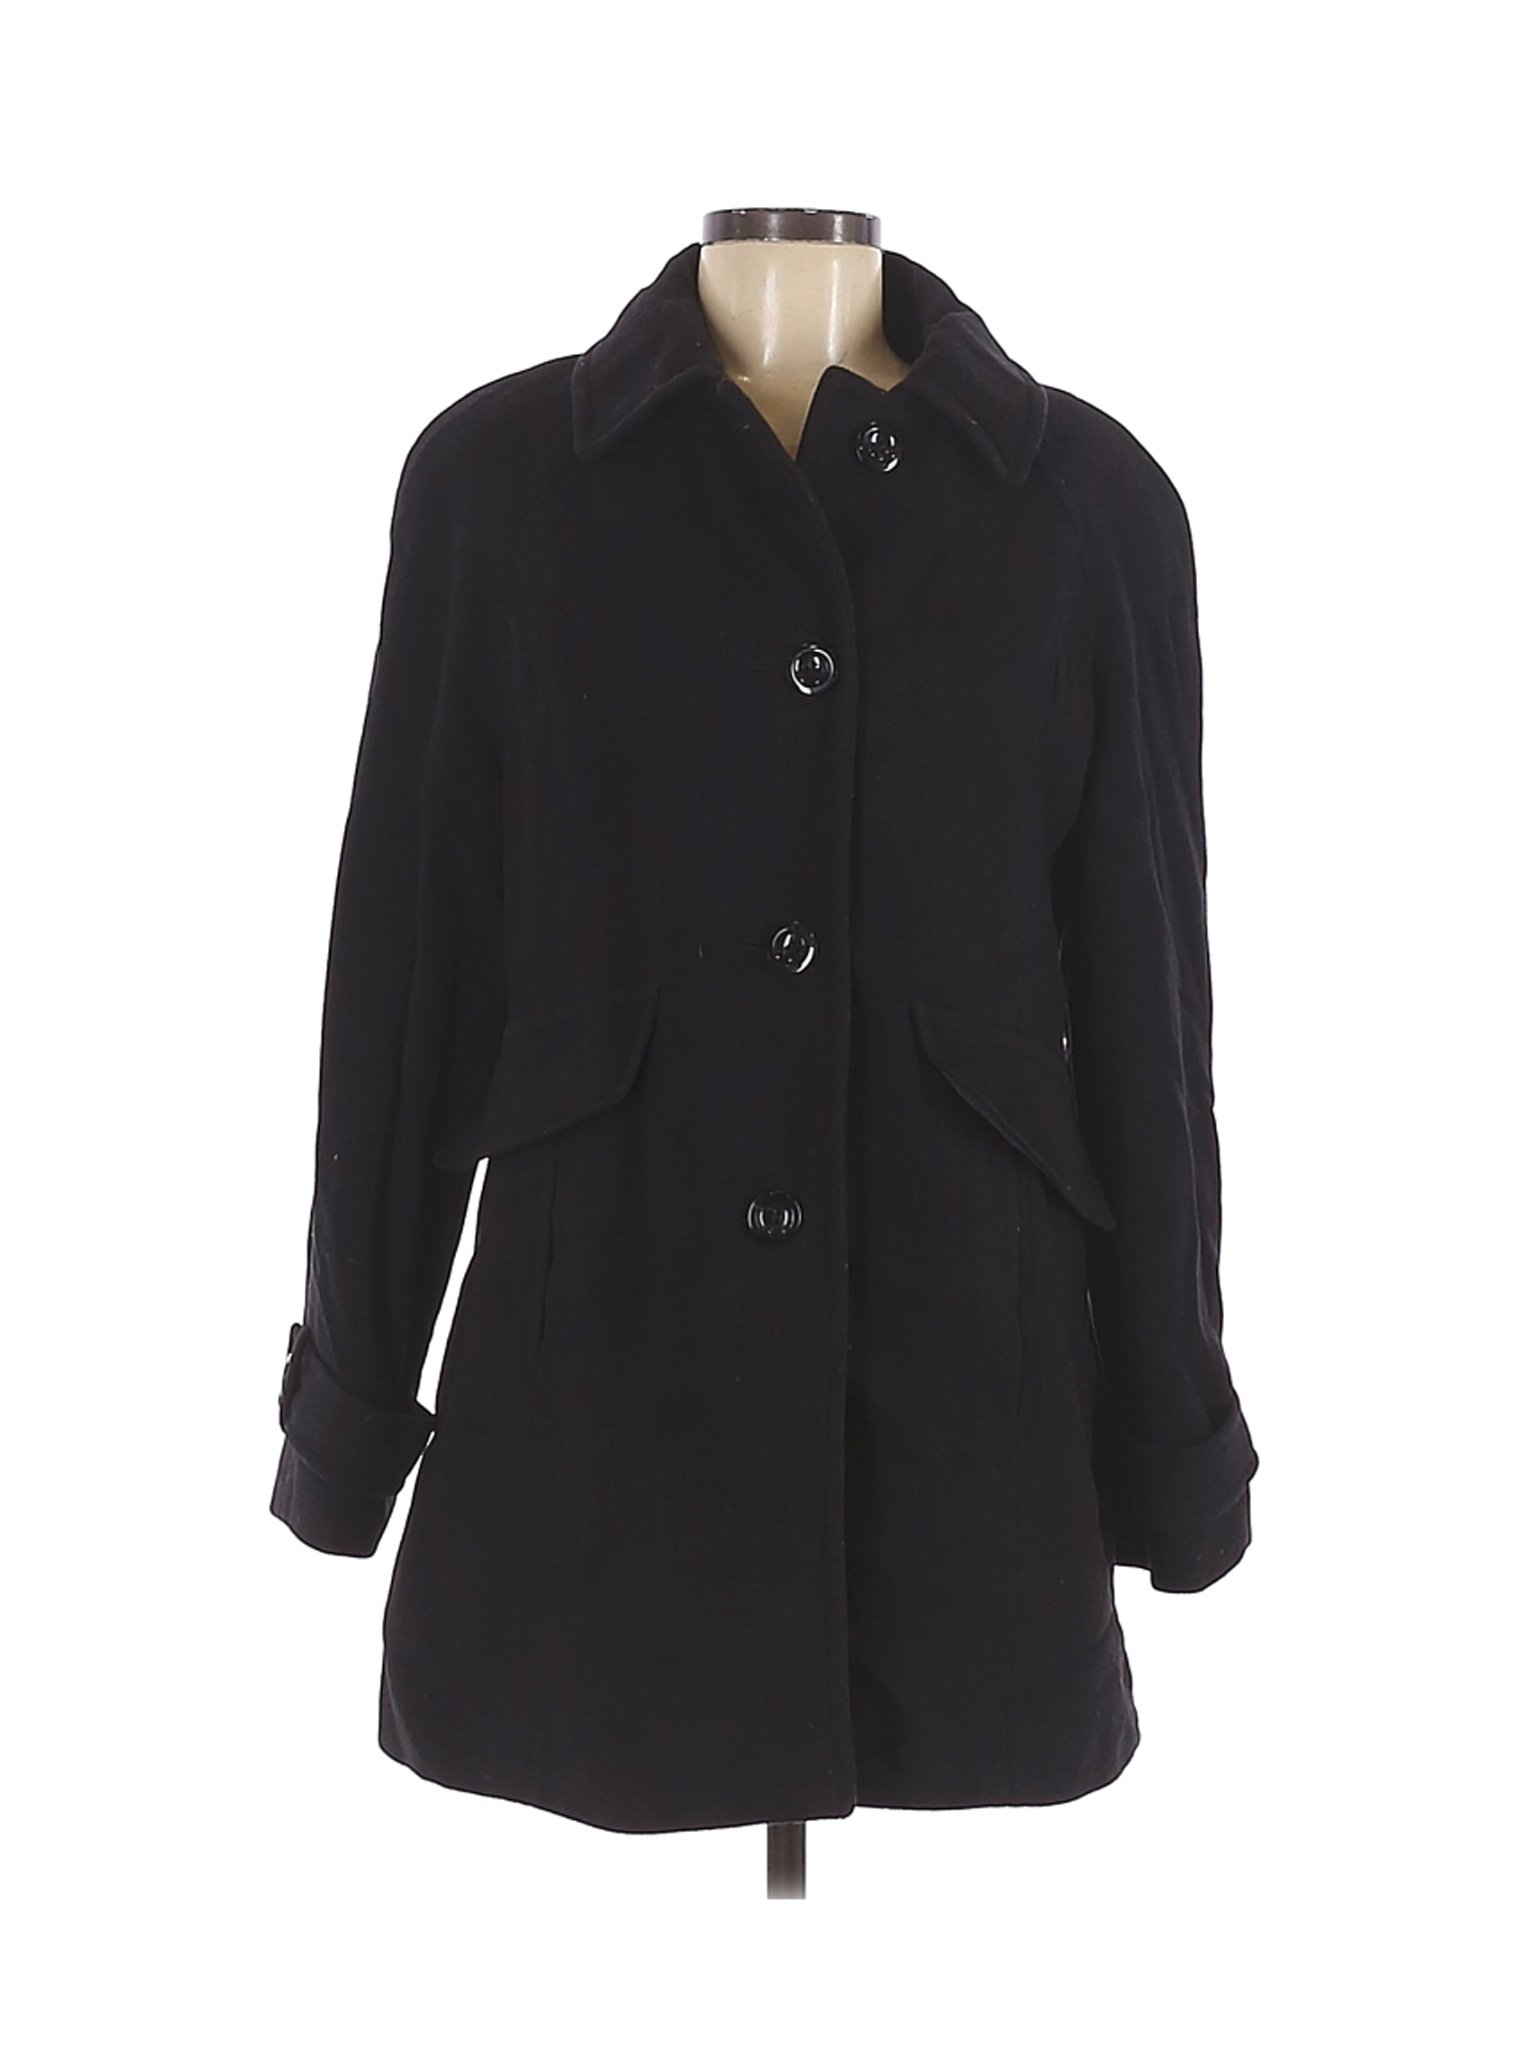 London Fog Women Black Wool Coat M | eBay